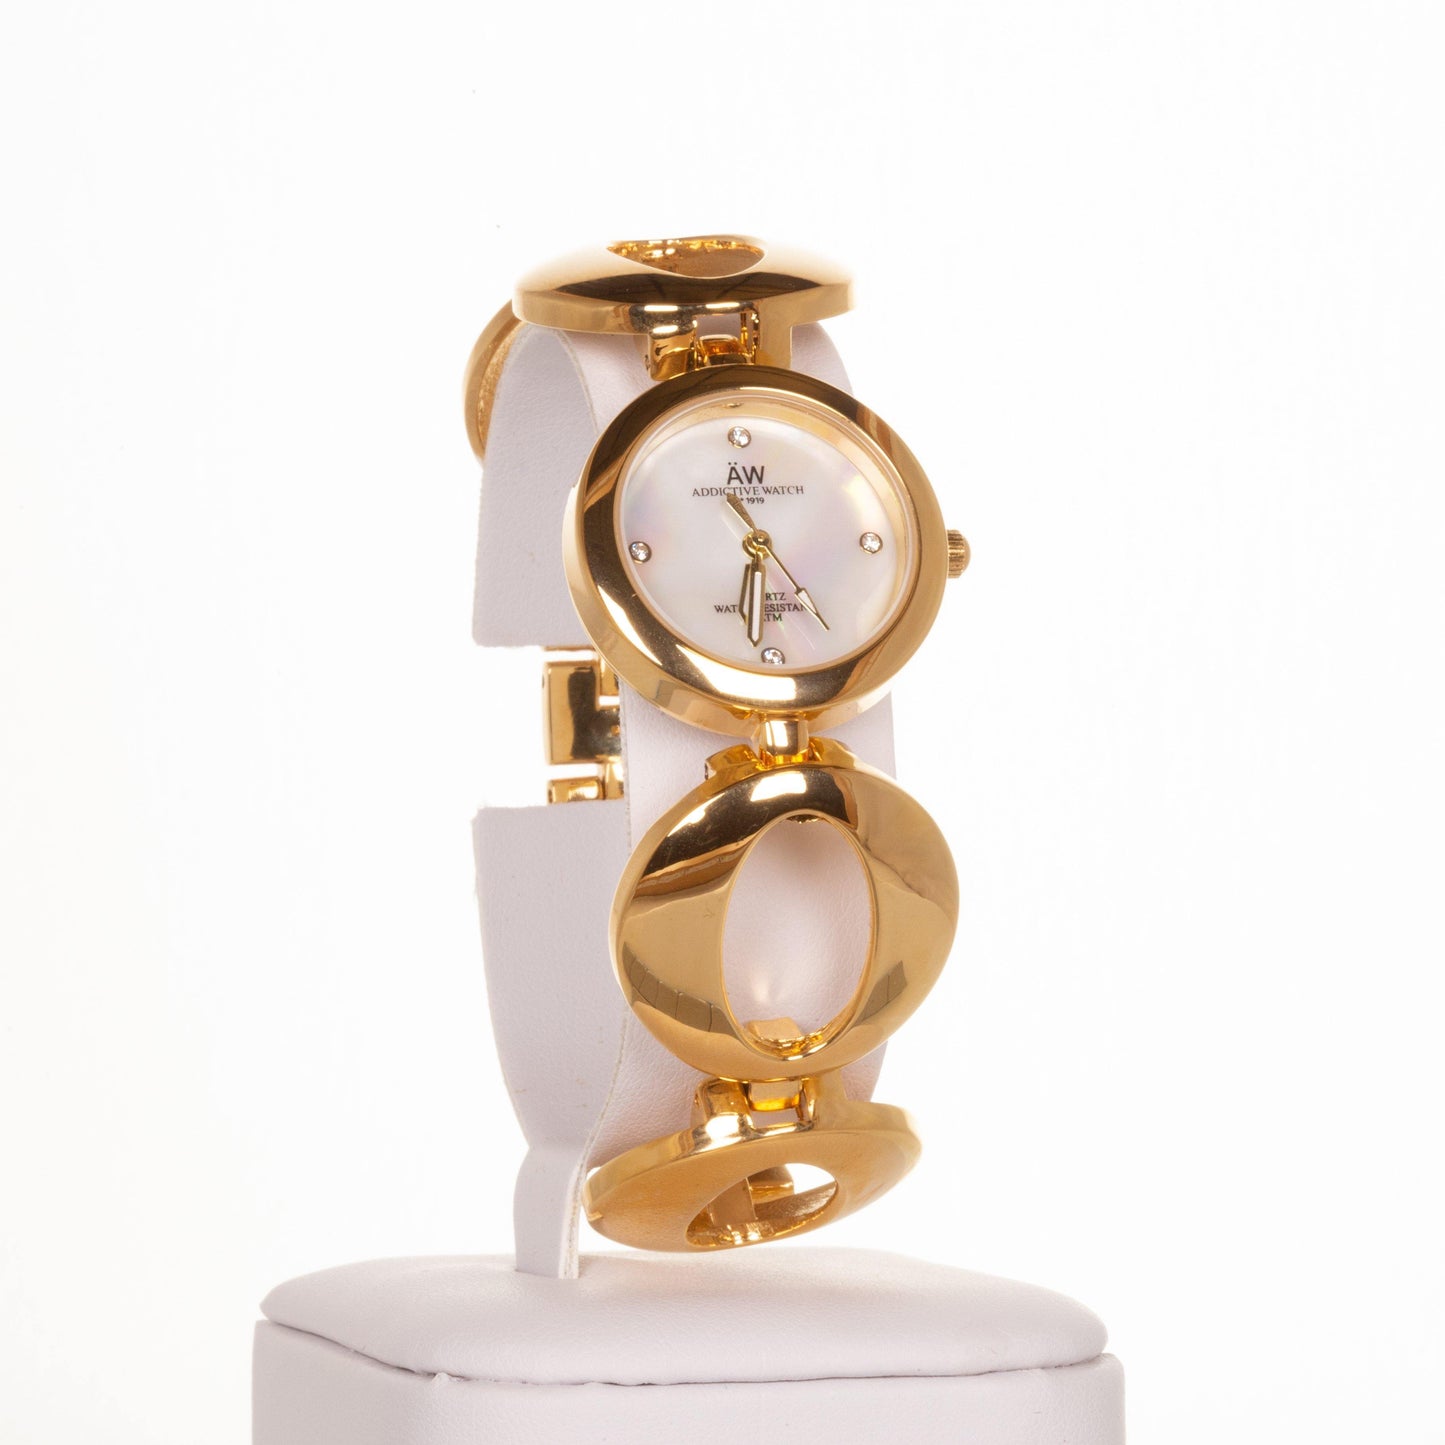 AW dámske hodinky vo farbe zlata s remienkom so symbolom nekonečna a 4 kryštálmi kremeňa - KlenotTV.sk